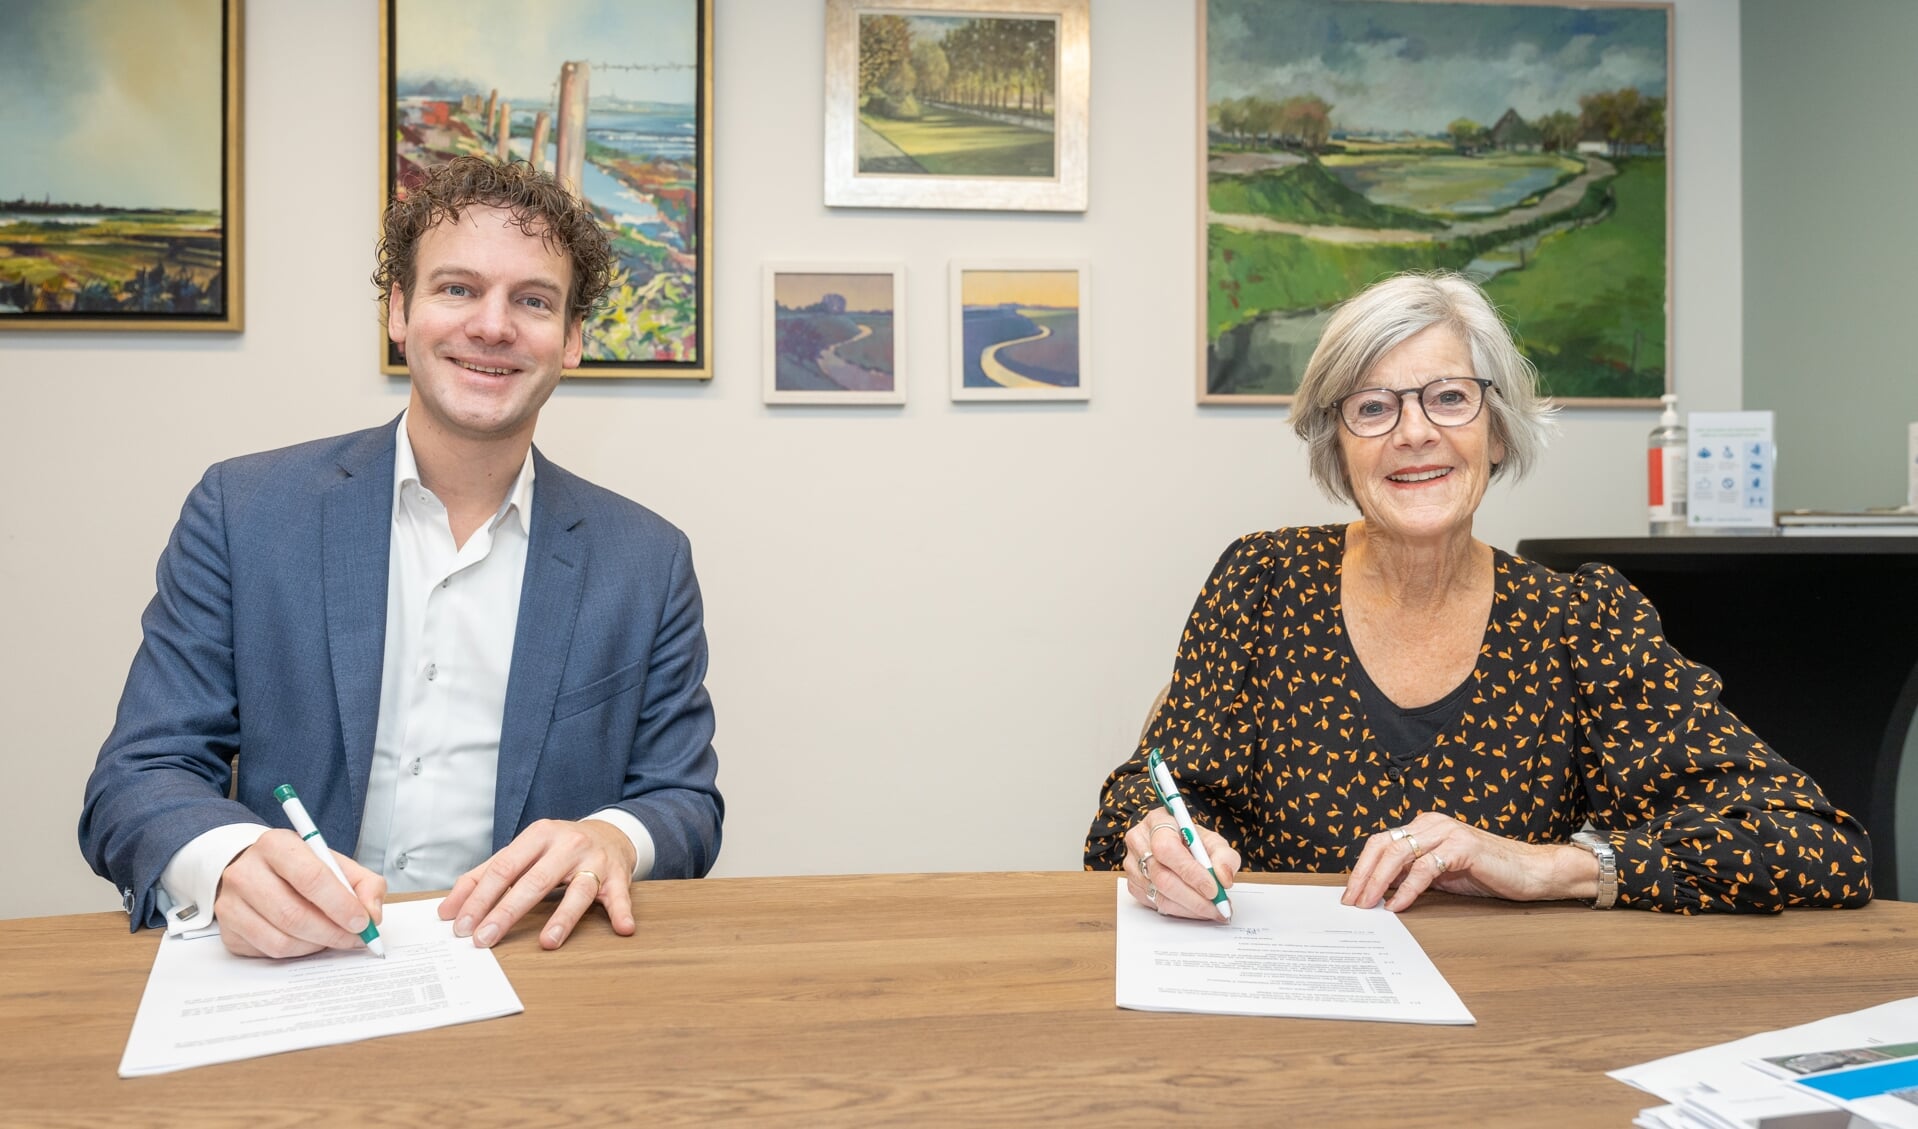 Wethouder Beemsterboer ondertekent met mevrouw Paauw de anterieure overeenkomst.